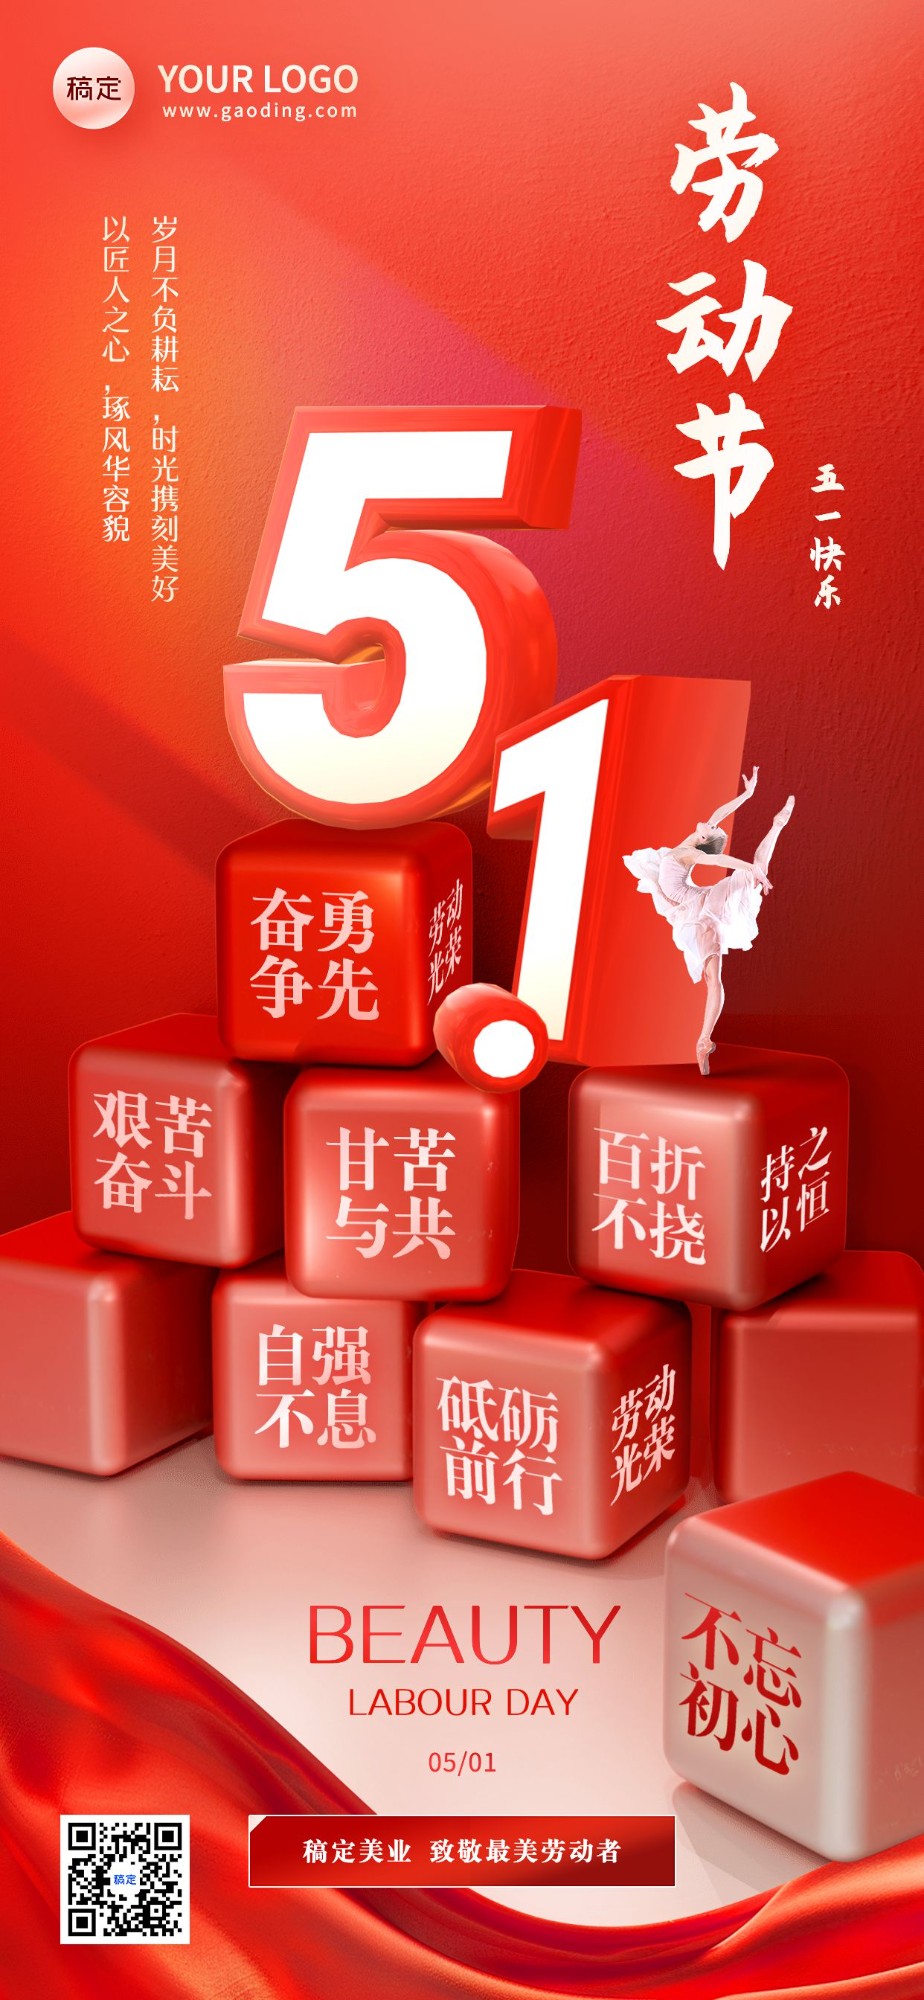 劳动节美业美容院节日祝福3D创意全屏竖版海报aigc